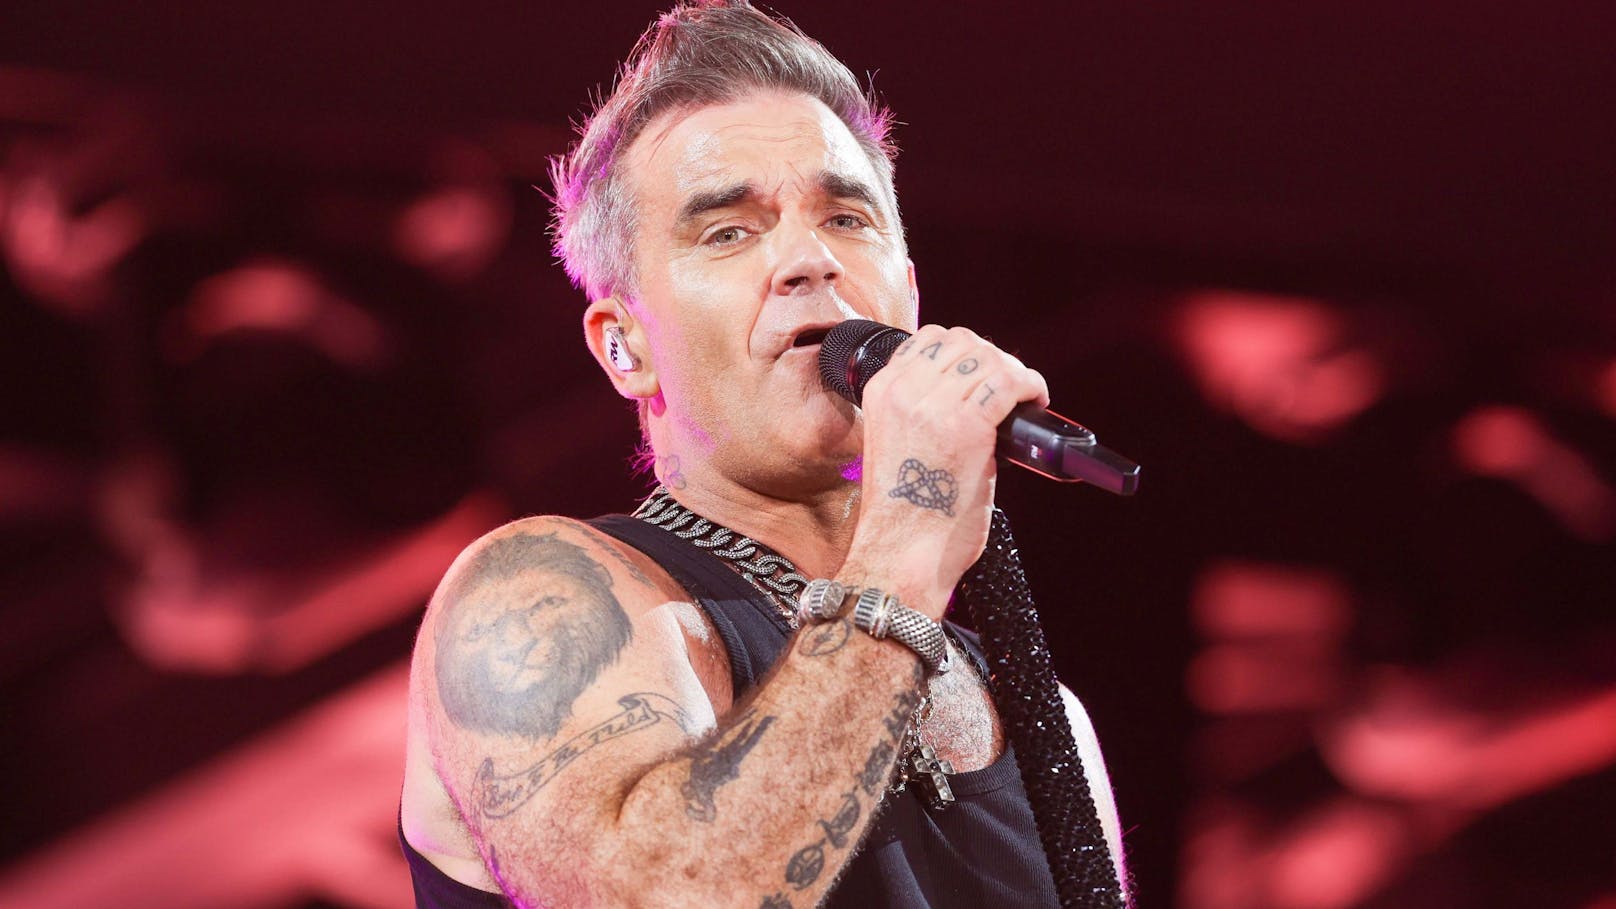 "Geht mir gut" – Robbie Williams gibt Gesundheitsupdate